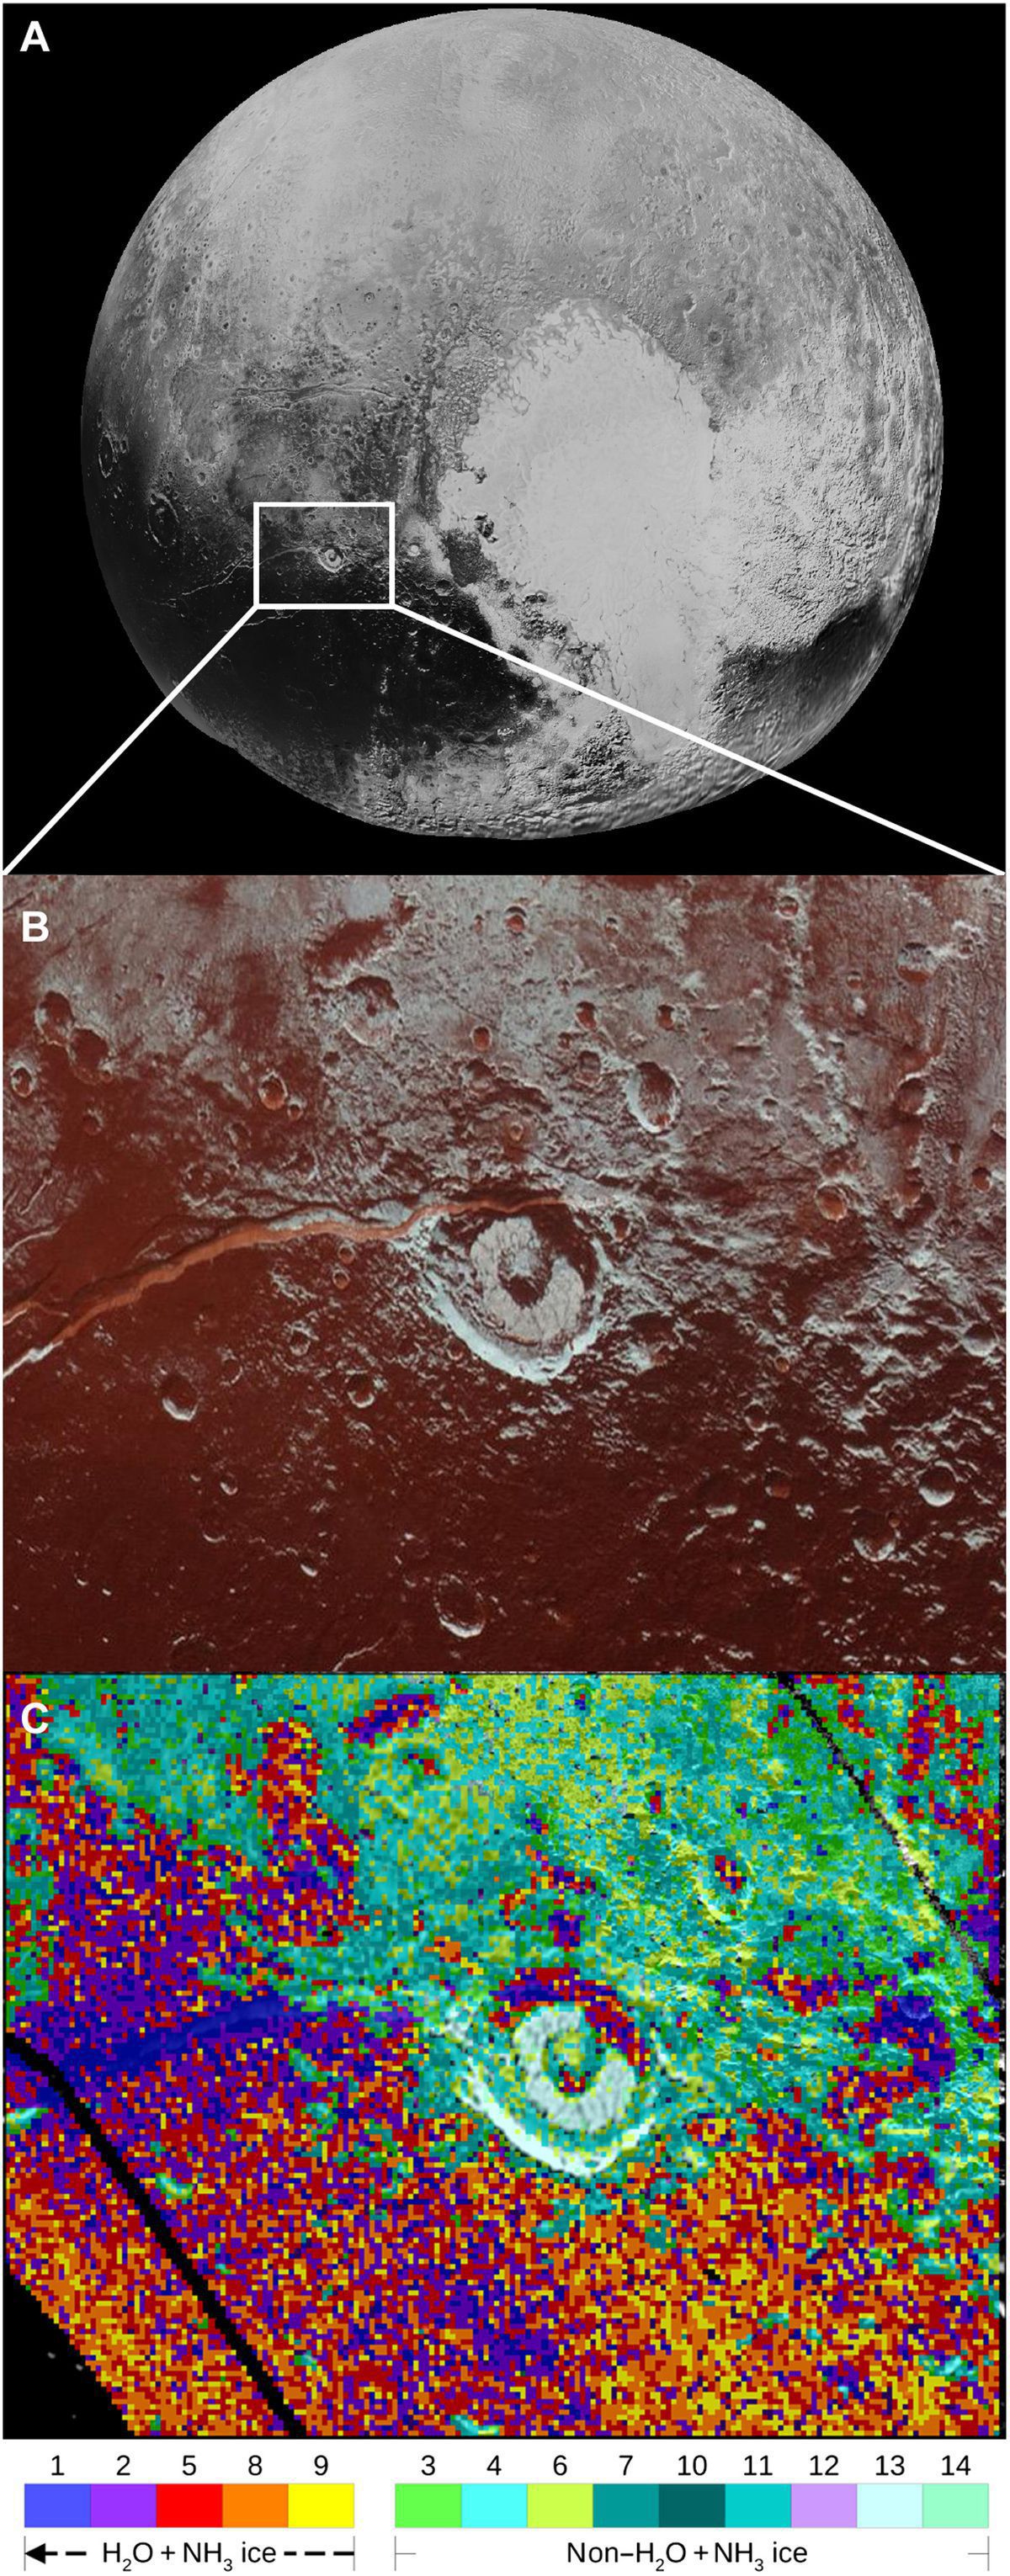 New Horizons виявила на поверхні Плутона аміак. Він входить до складу водяного льоду, що покриває борозну Вергілія.